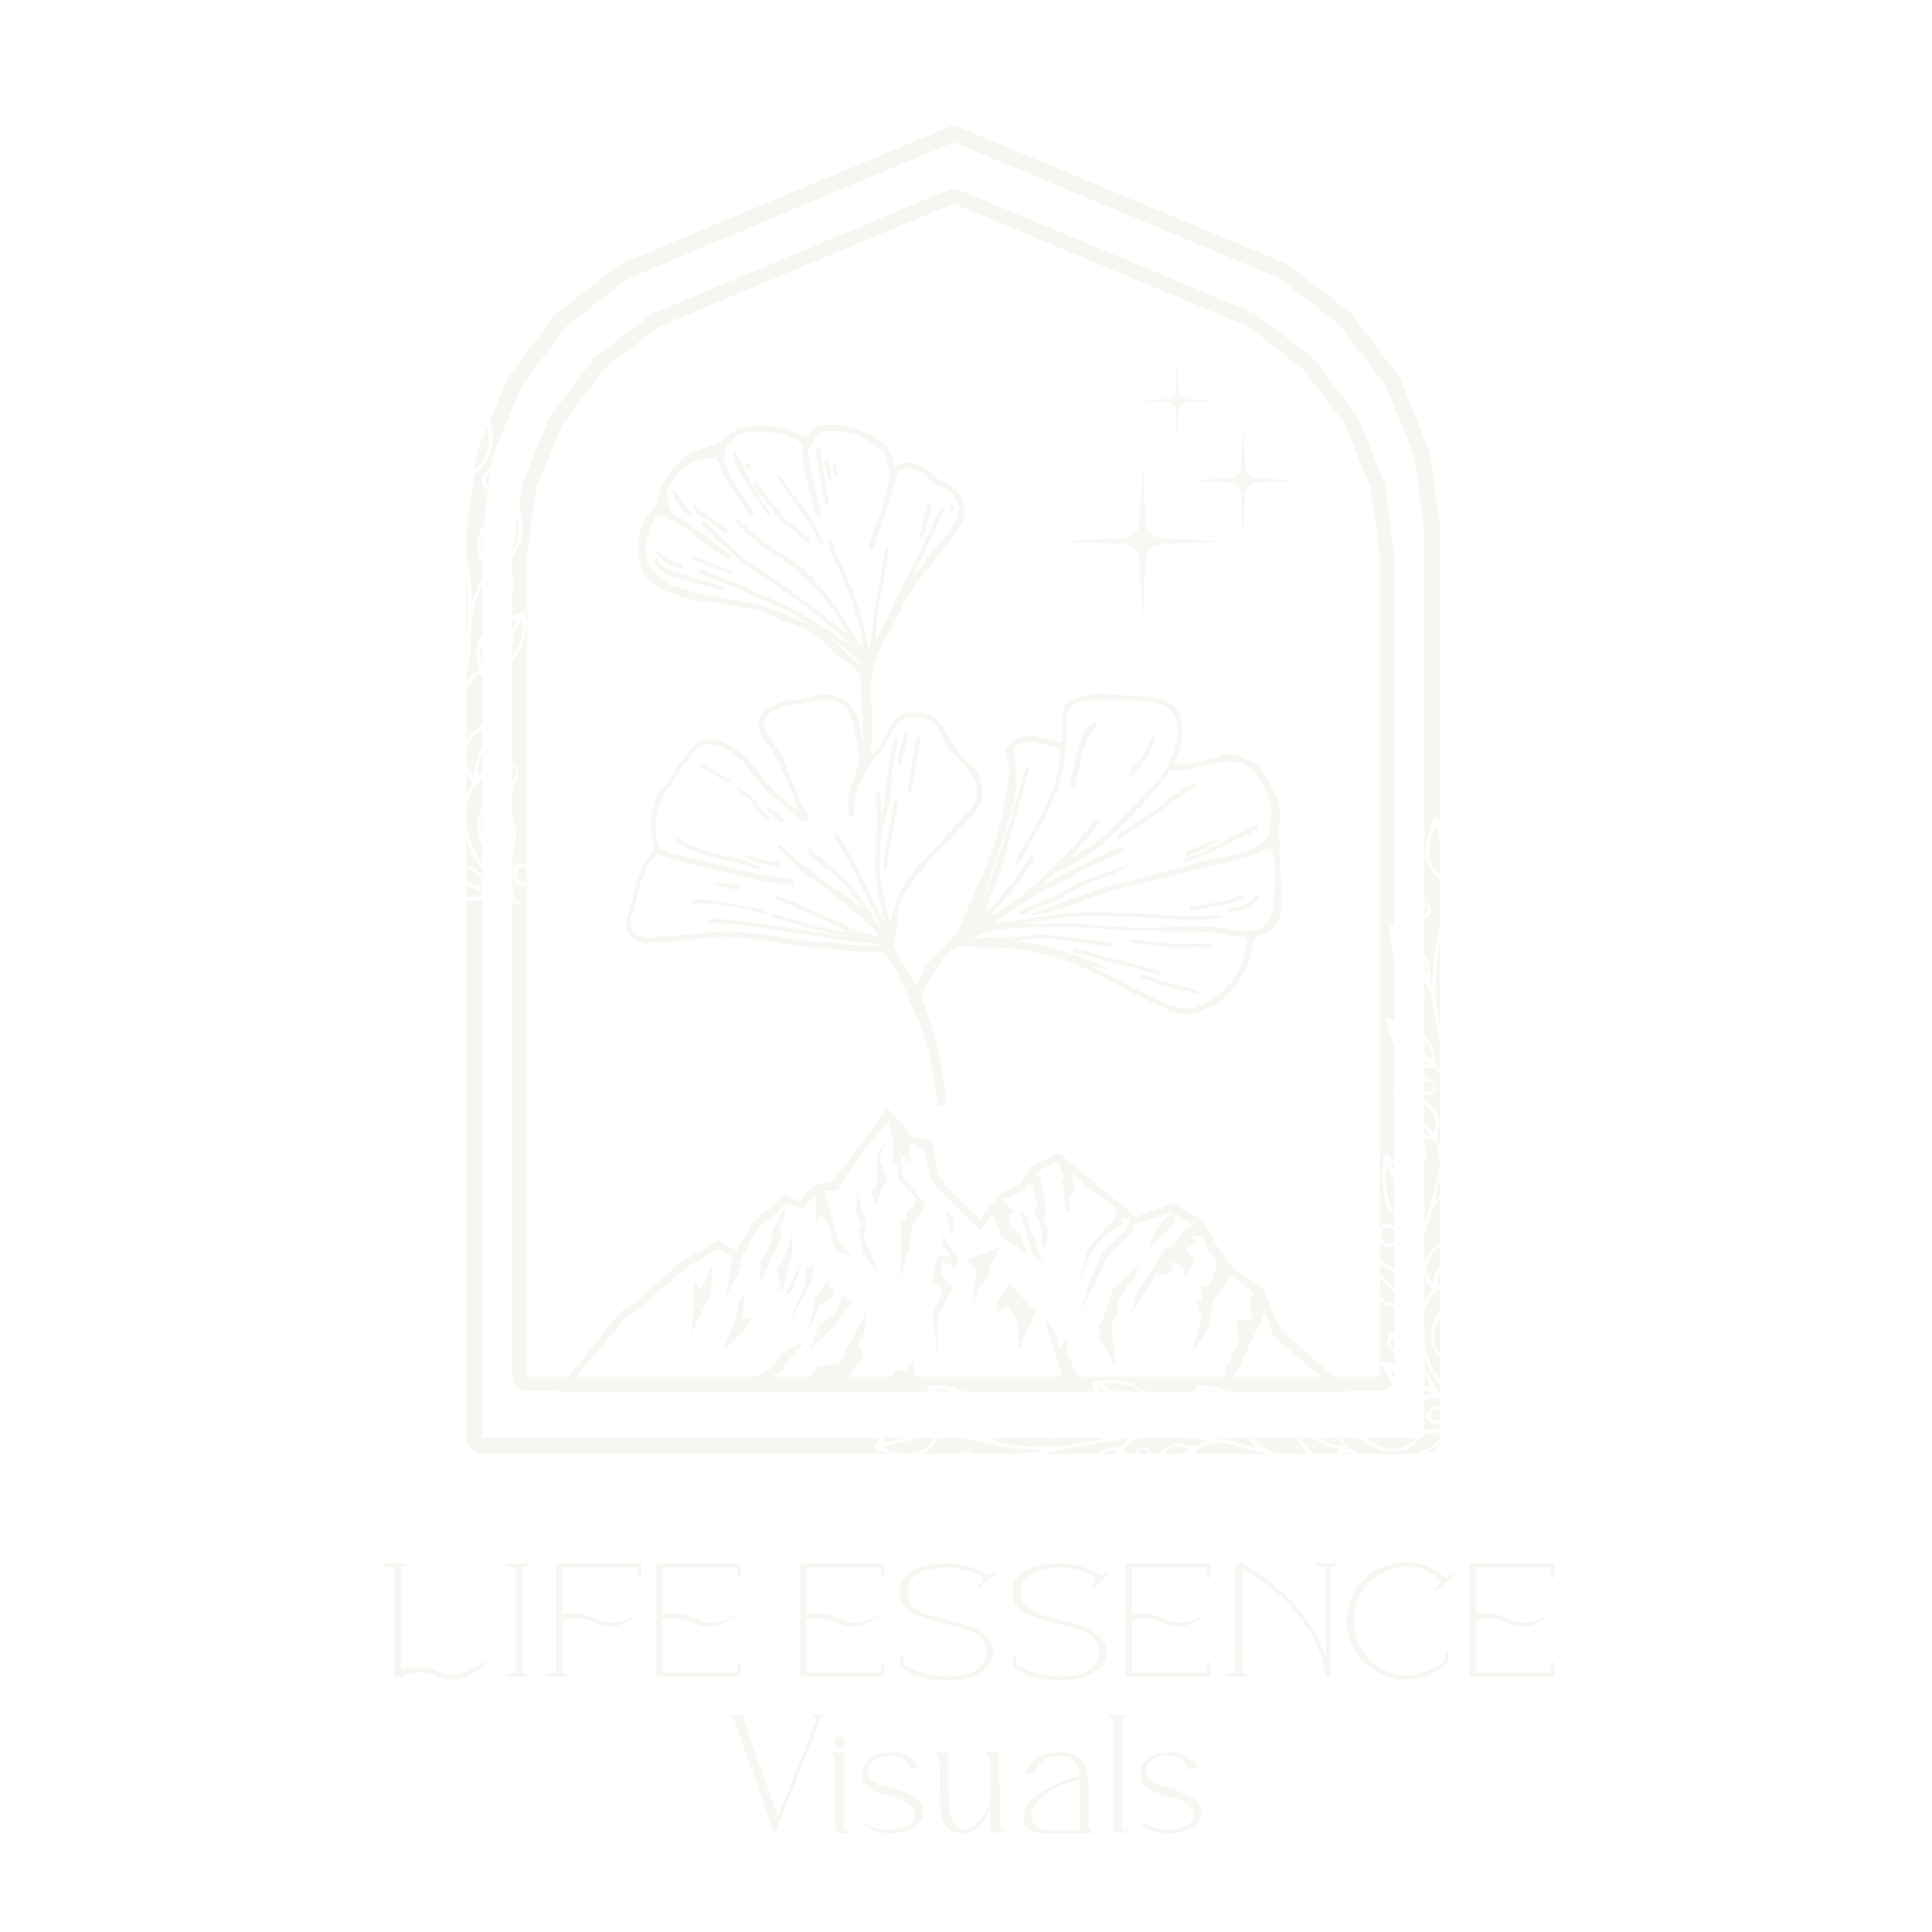 Life Essence Visuals